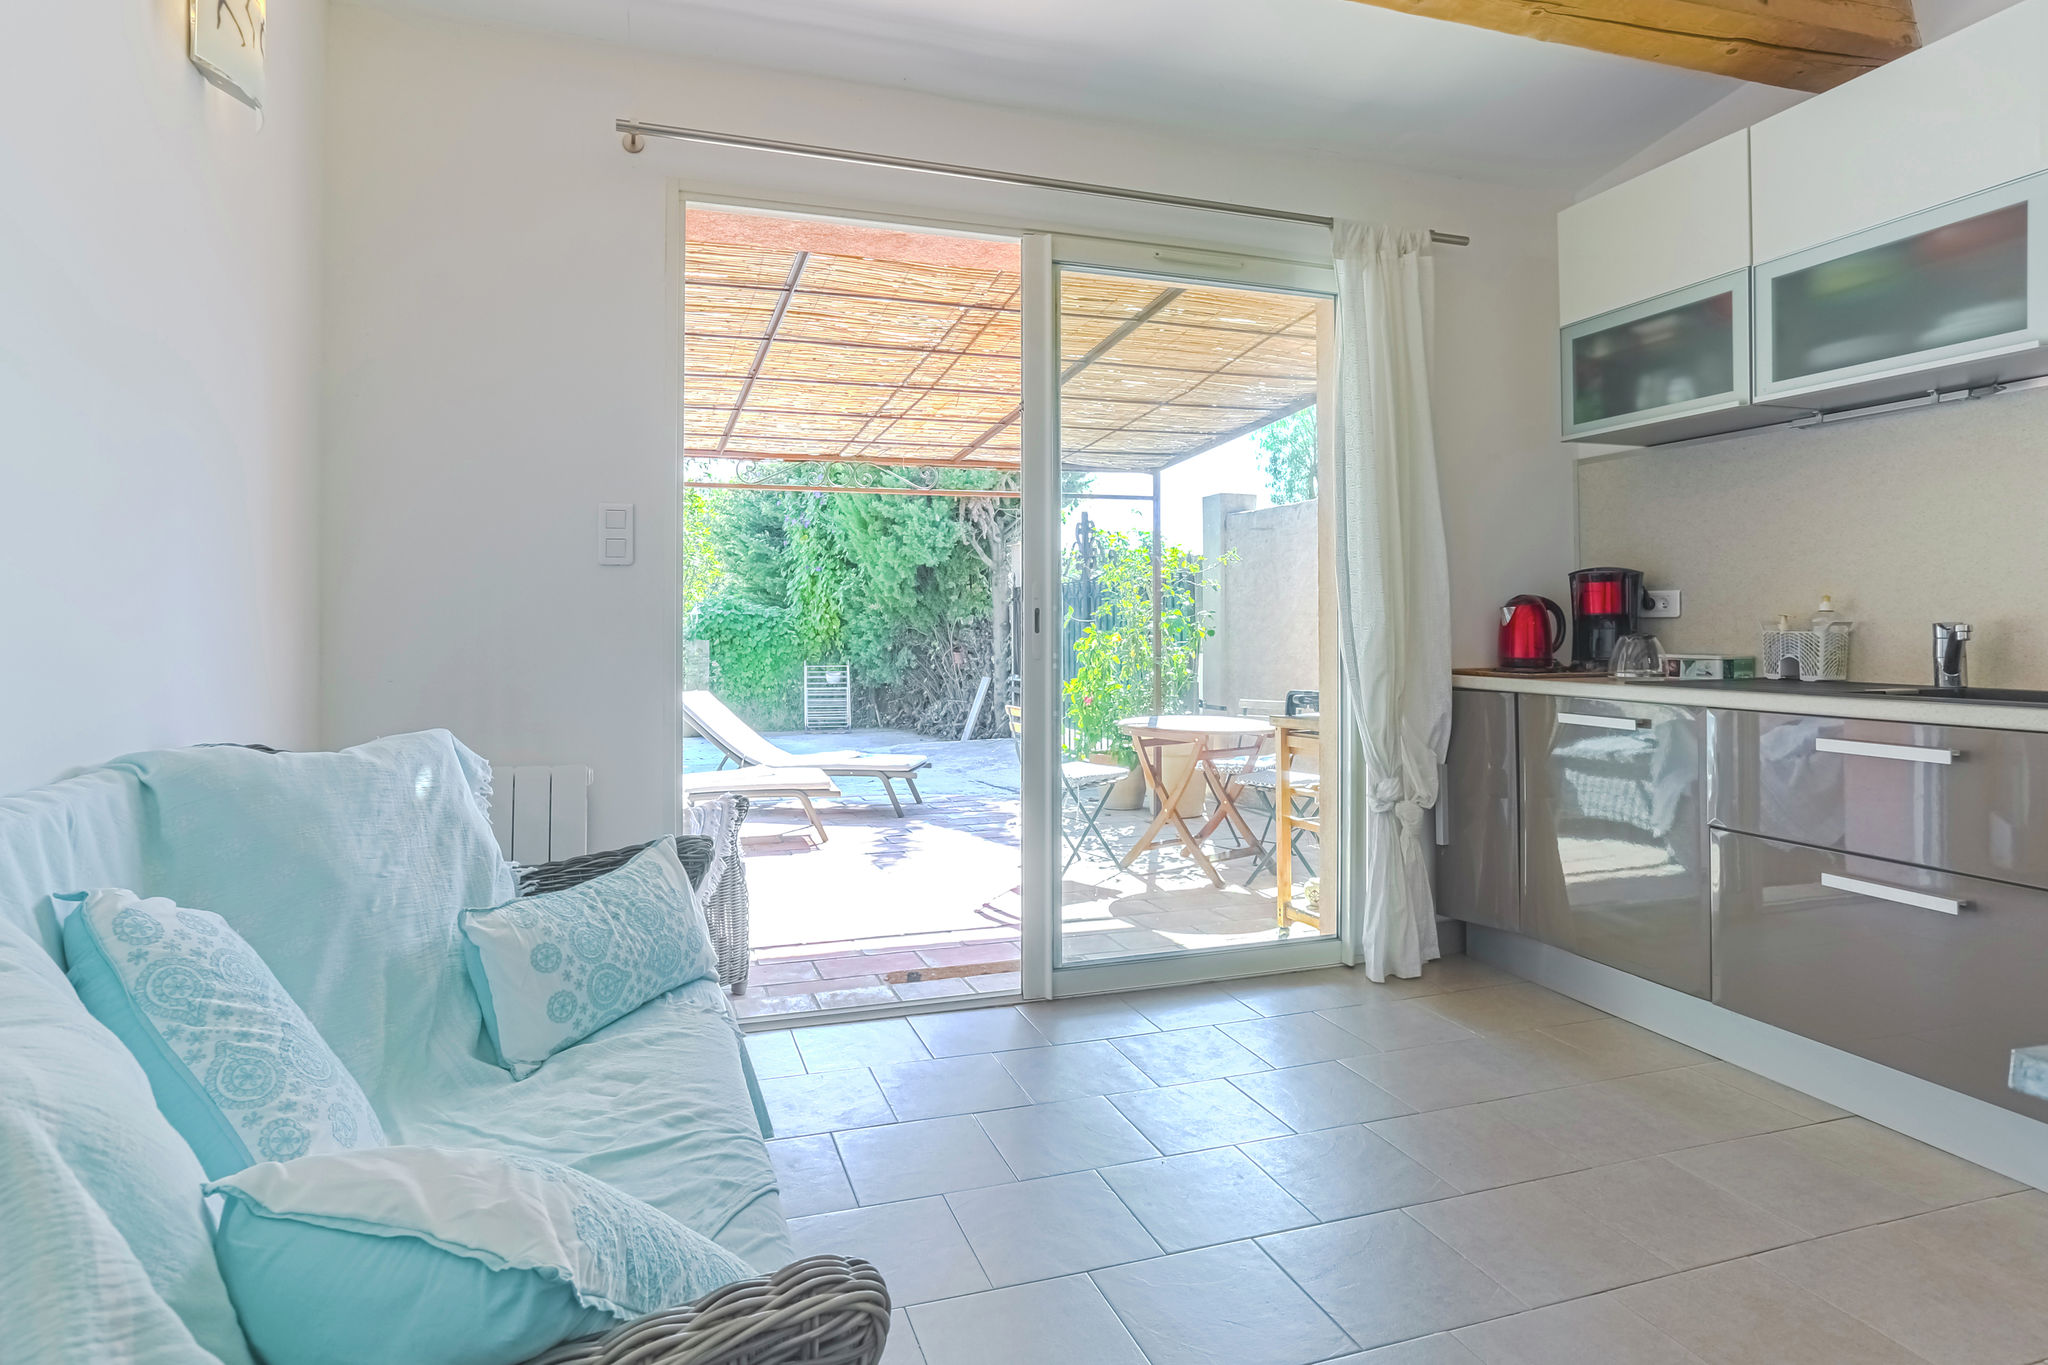 Maison de vacances confortable à Grimaud proche de la plage, 
Entrée indépendante avec parking .